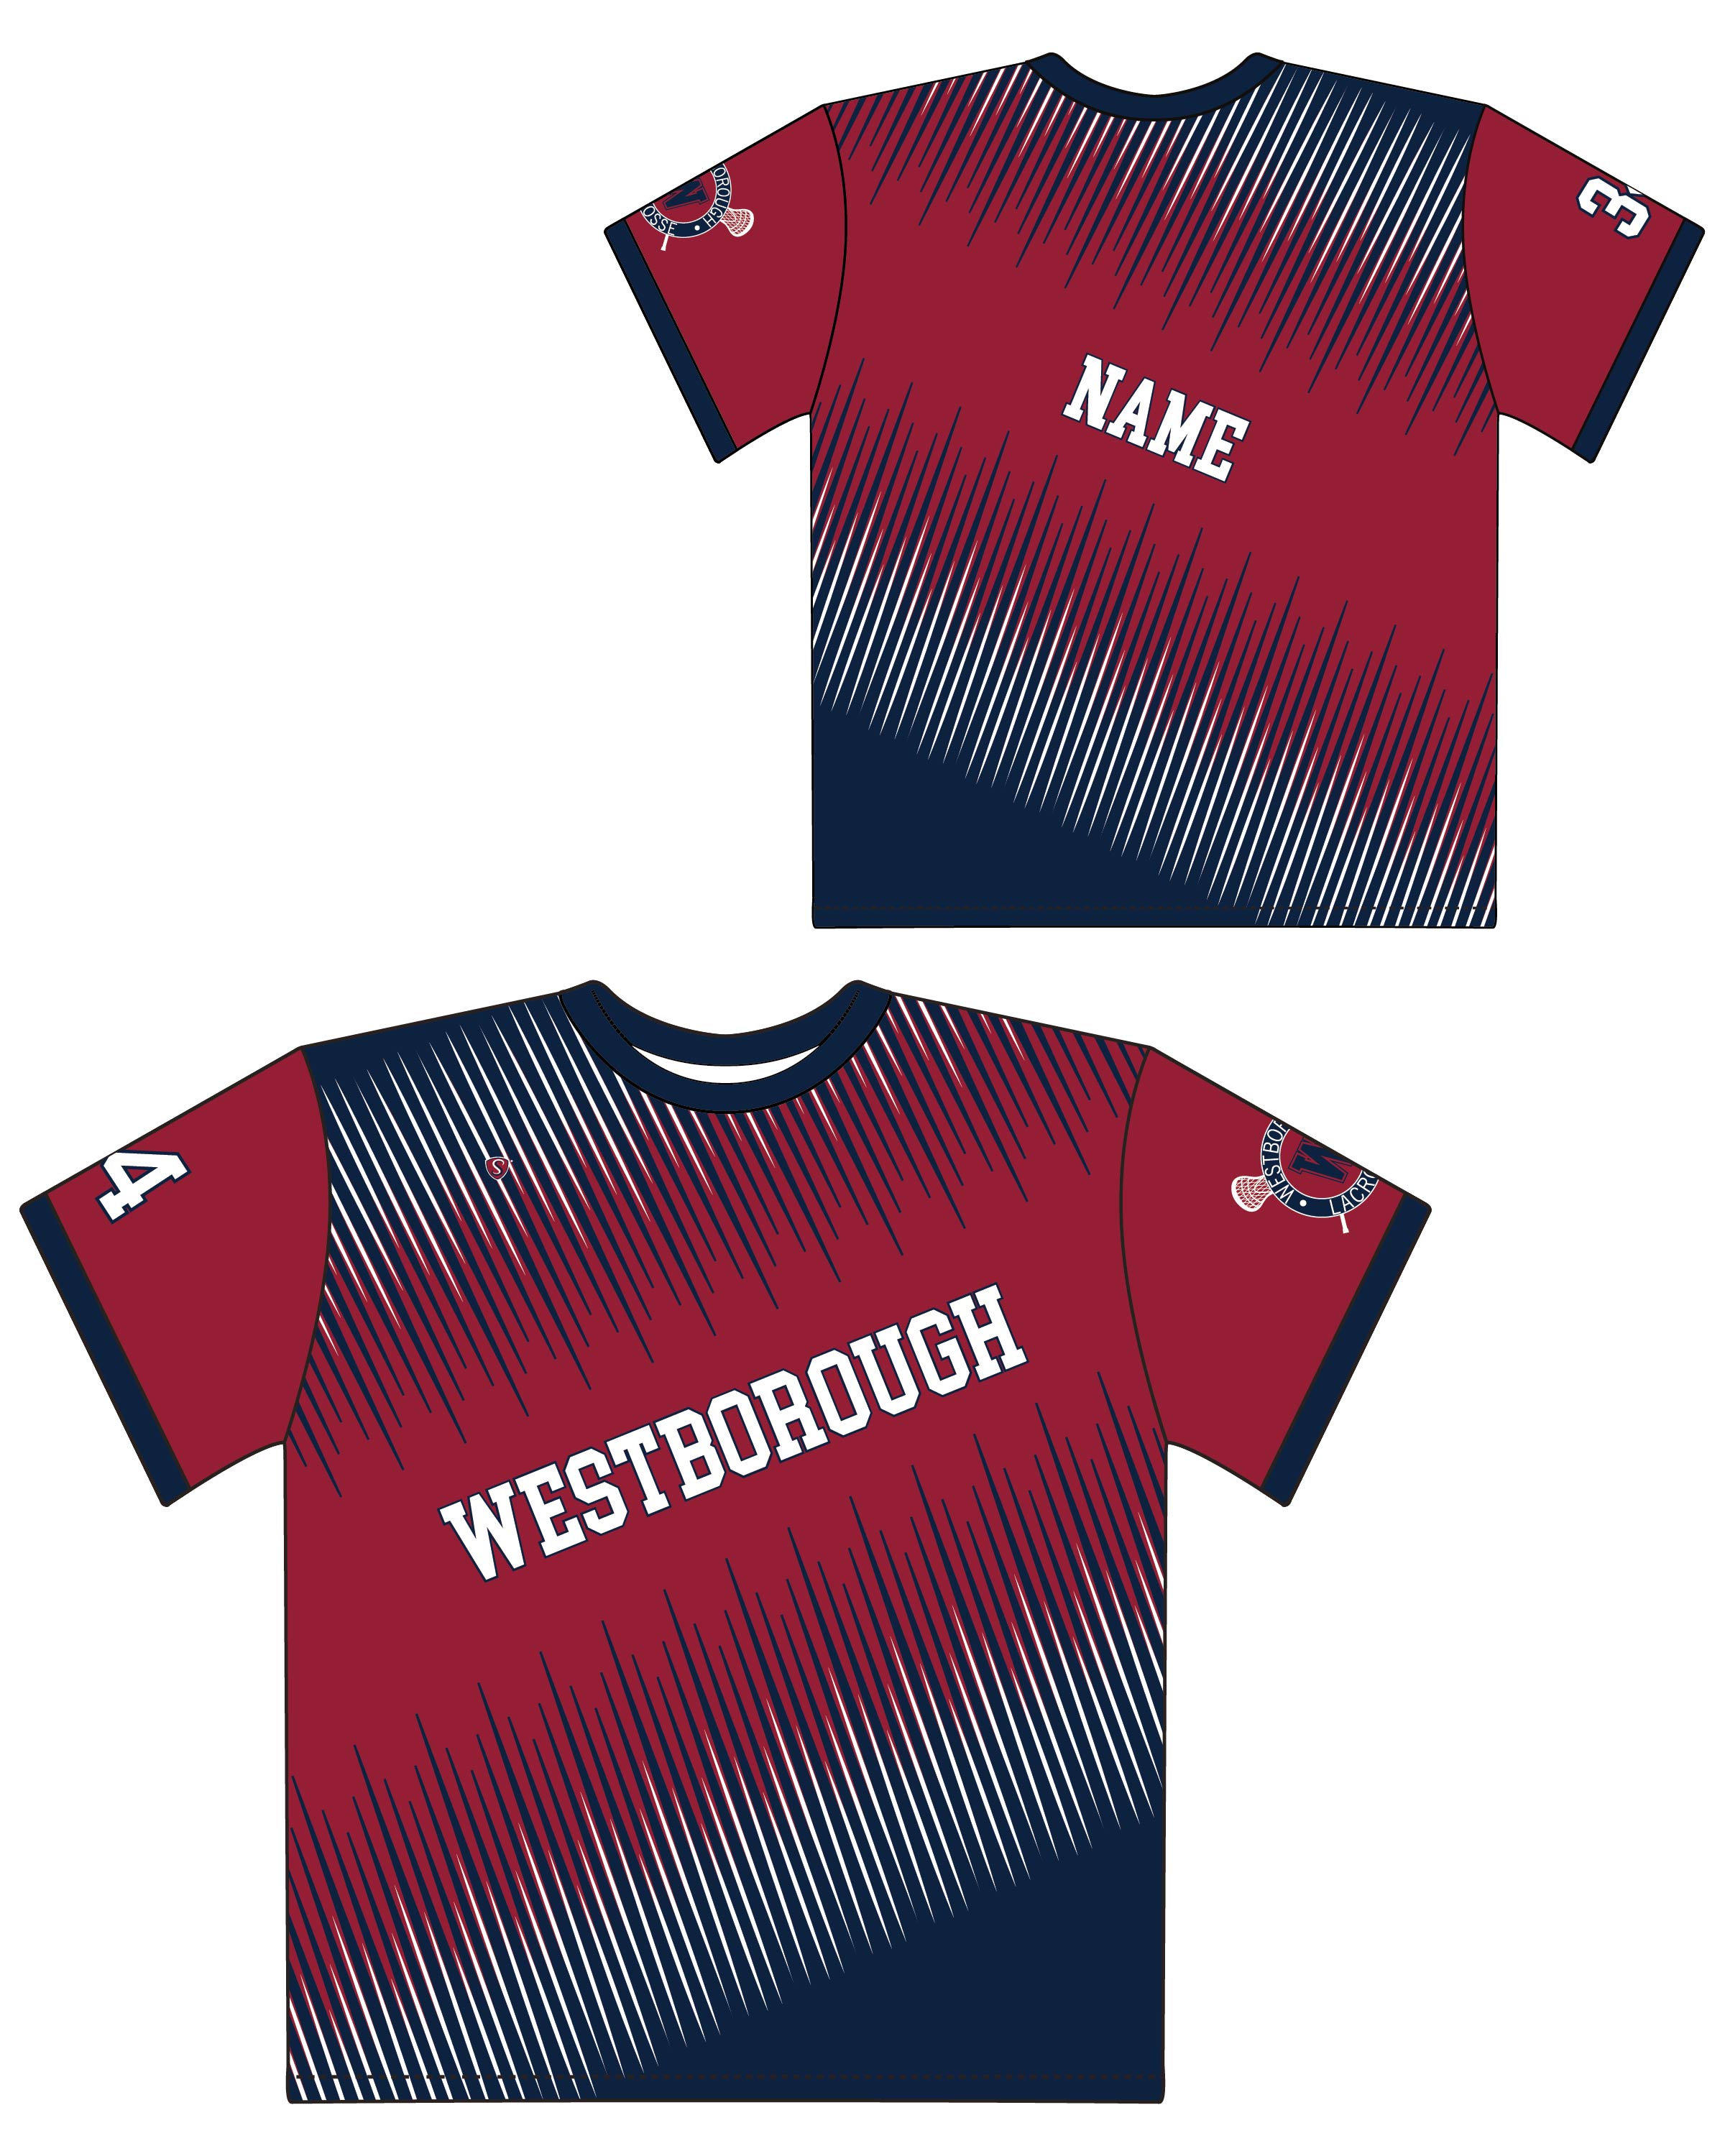 Custom Sublimated Shooter Shirt - Westborough 2